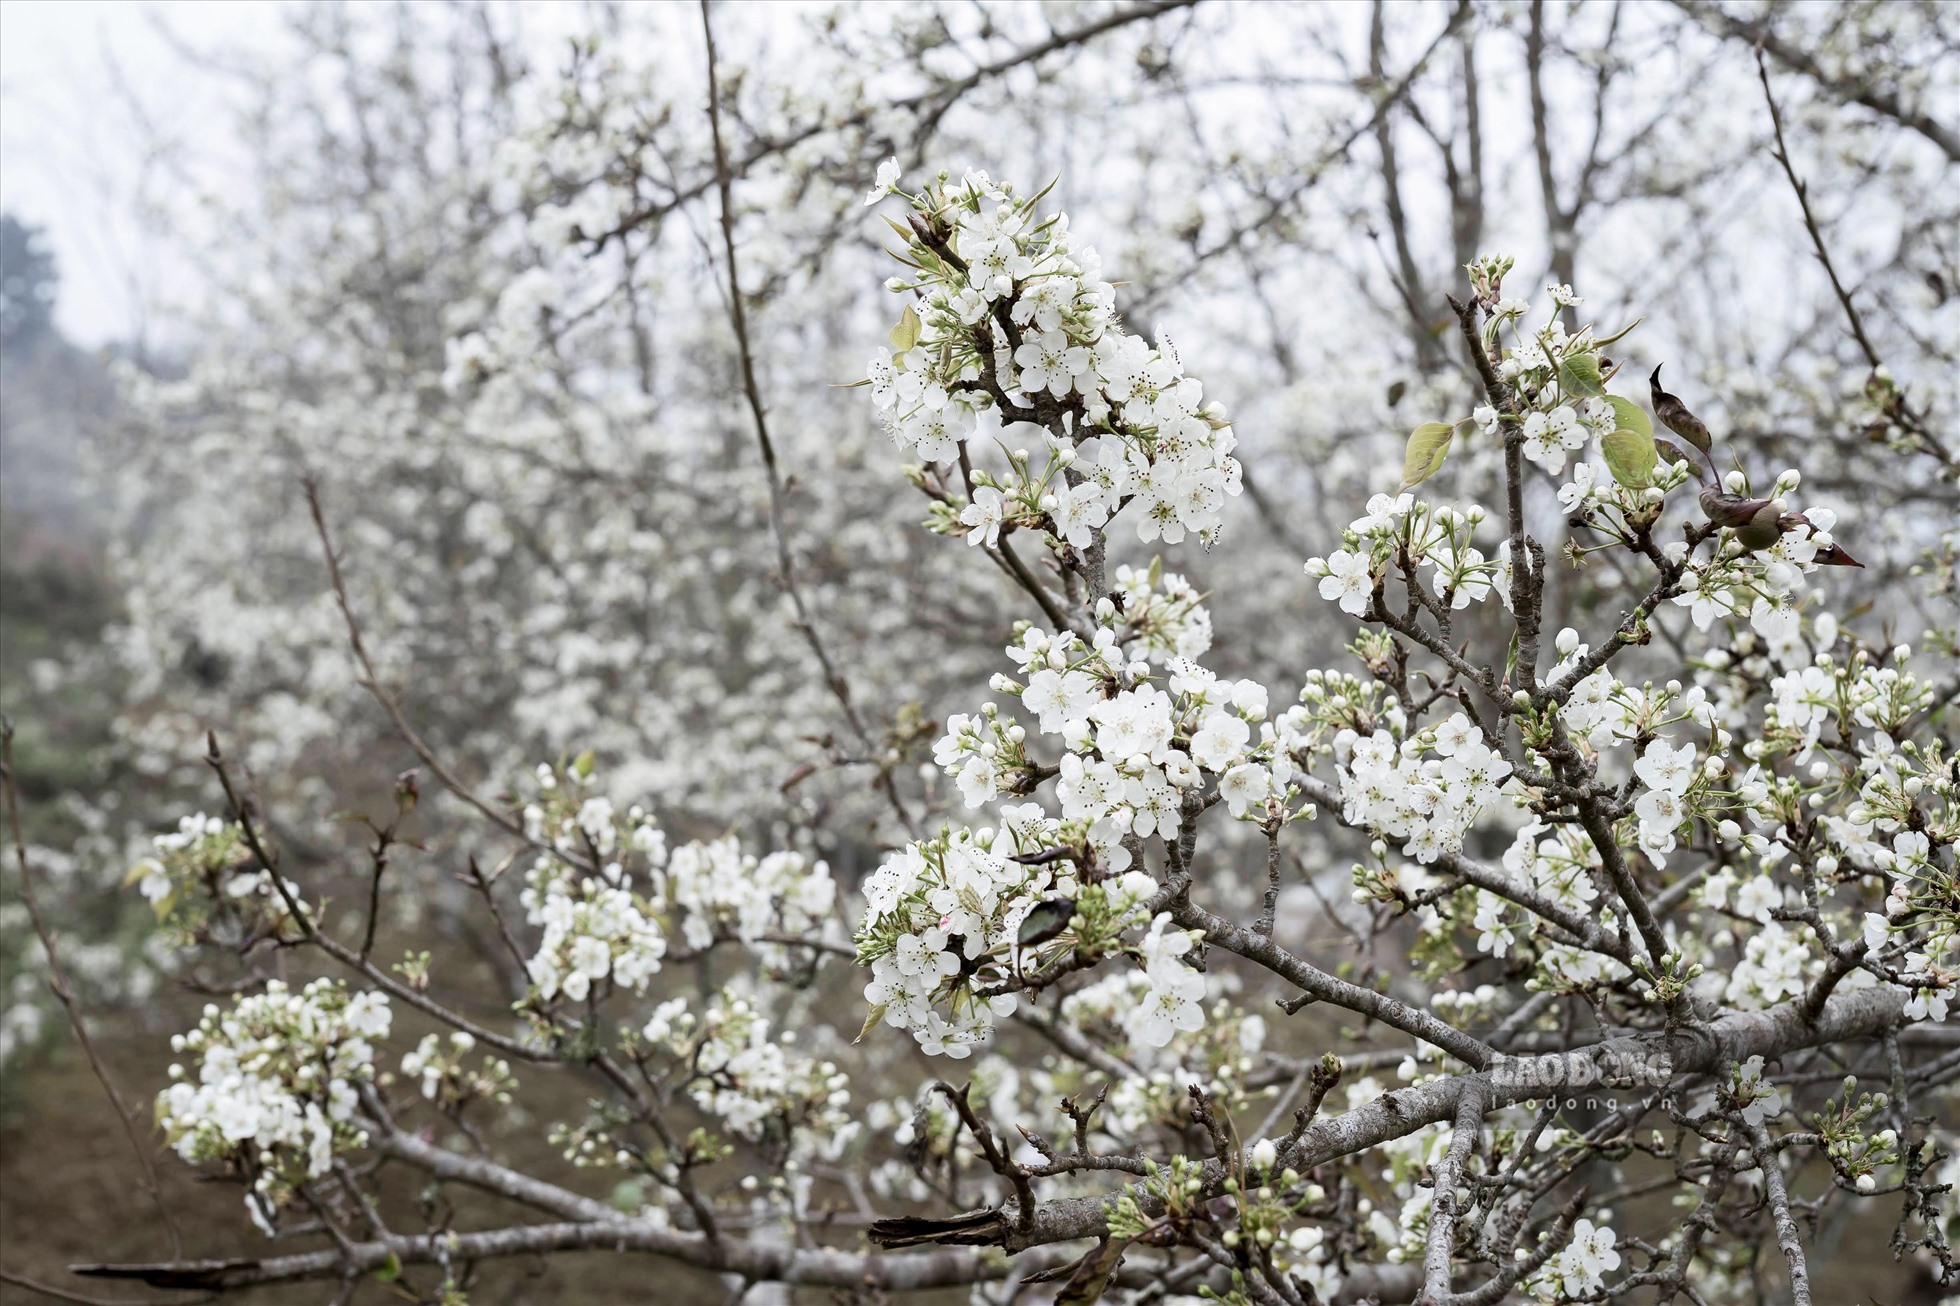 Vài năm trở lại đây, cây lê ở Hồng Thái không đơn thuần chỉ để lấy quả mà còn phục vụ du lịch rất hiệu quả. Cuối tháng 2 đầu tháng 3 hàng năm là thời điểm hoa lê bung nở, dịp này du khách thập phương tìm về thưởng ngoạn vẻ đẹp tinh khôi của hoa lê.